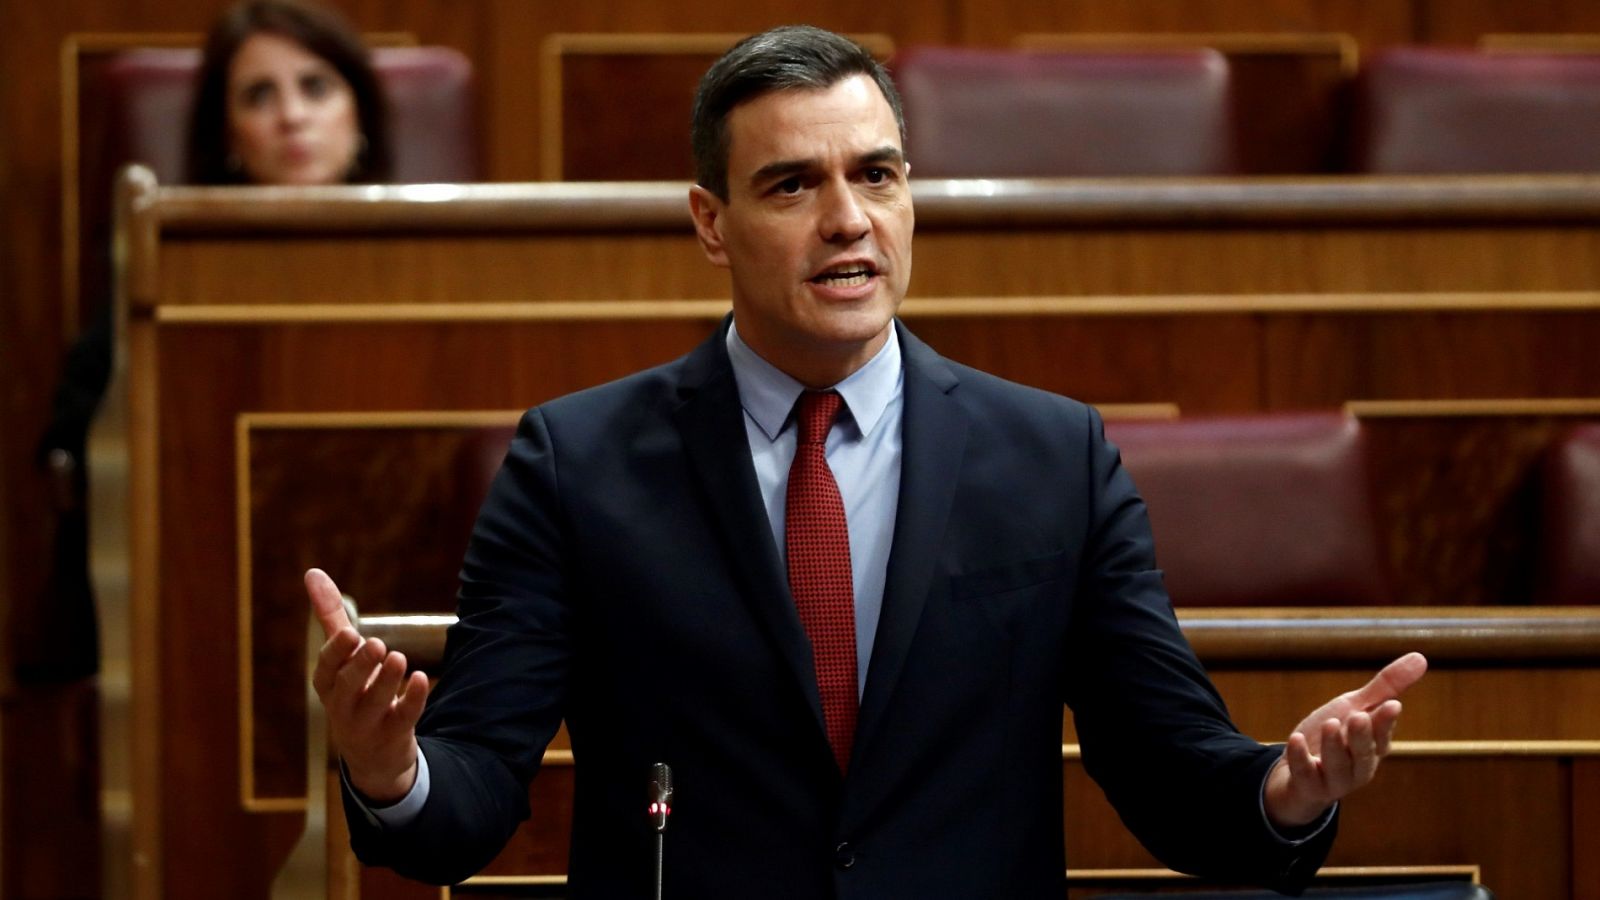 Sánchez pide al PP que abandone "su postura intransigente" y Casado le acusa de "mentir" en la gestión de la crisis - RTVE.es